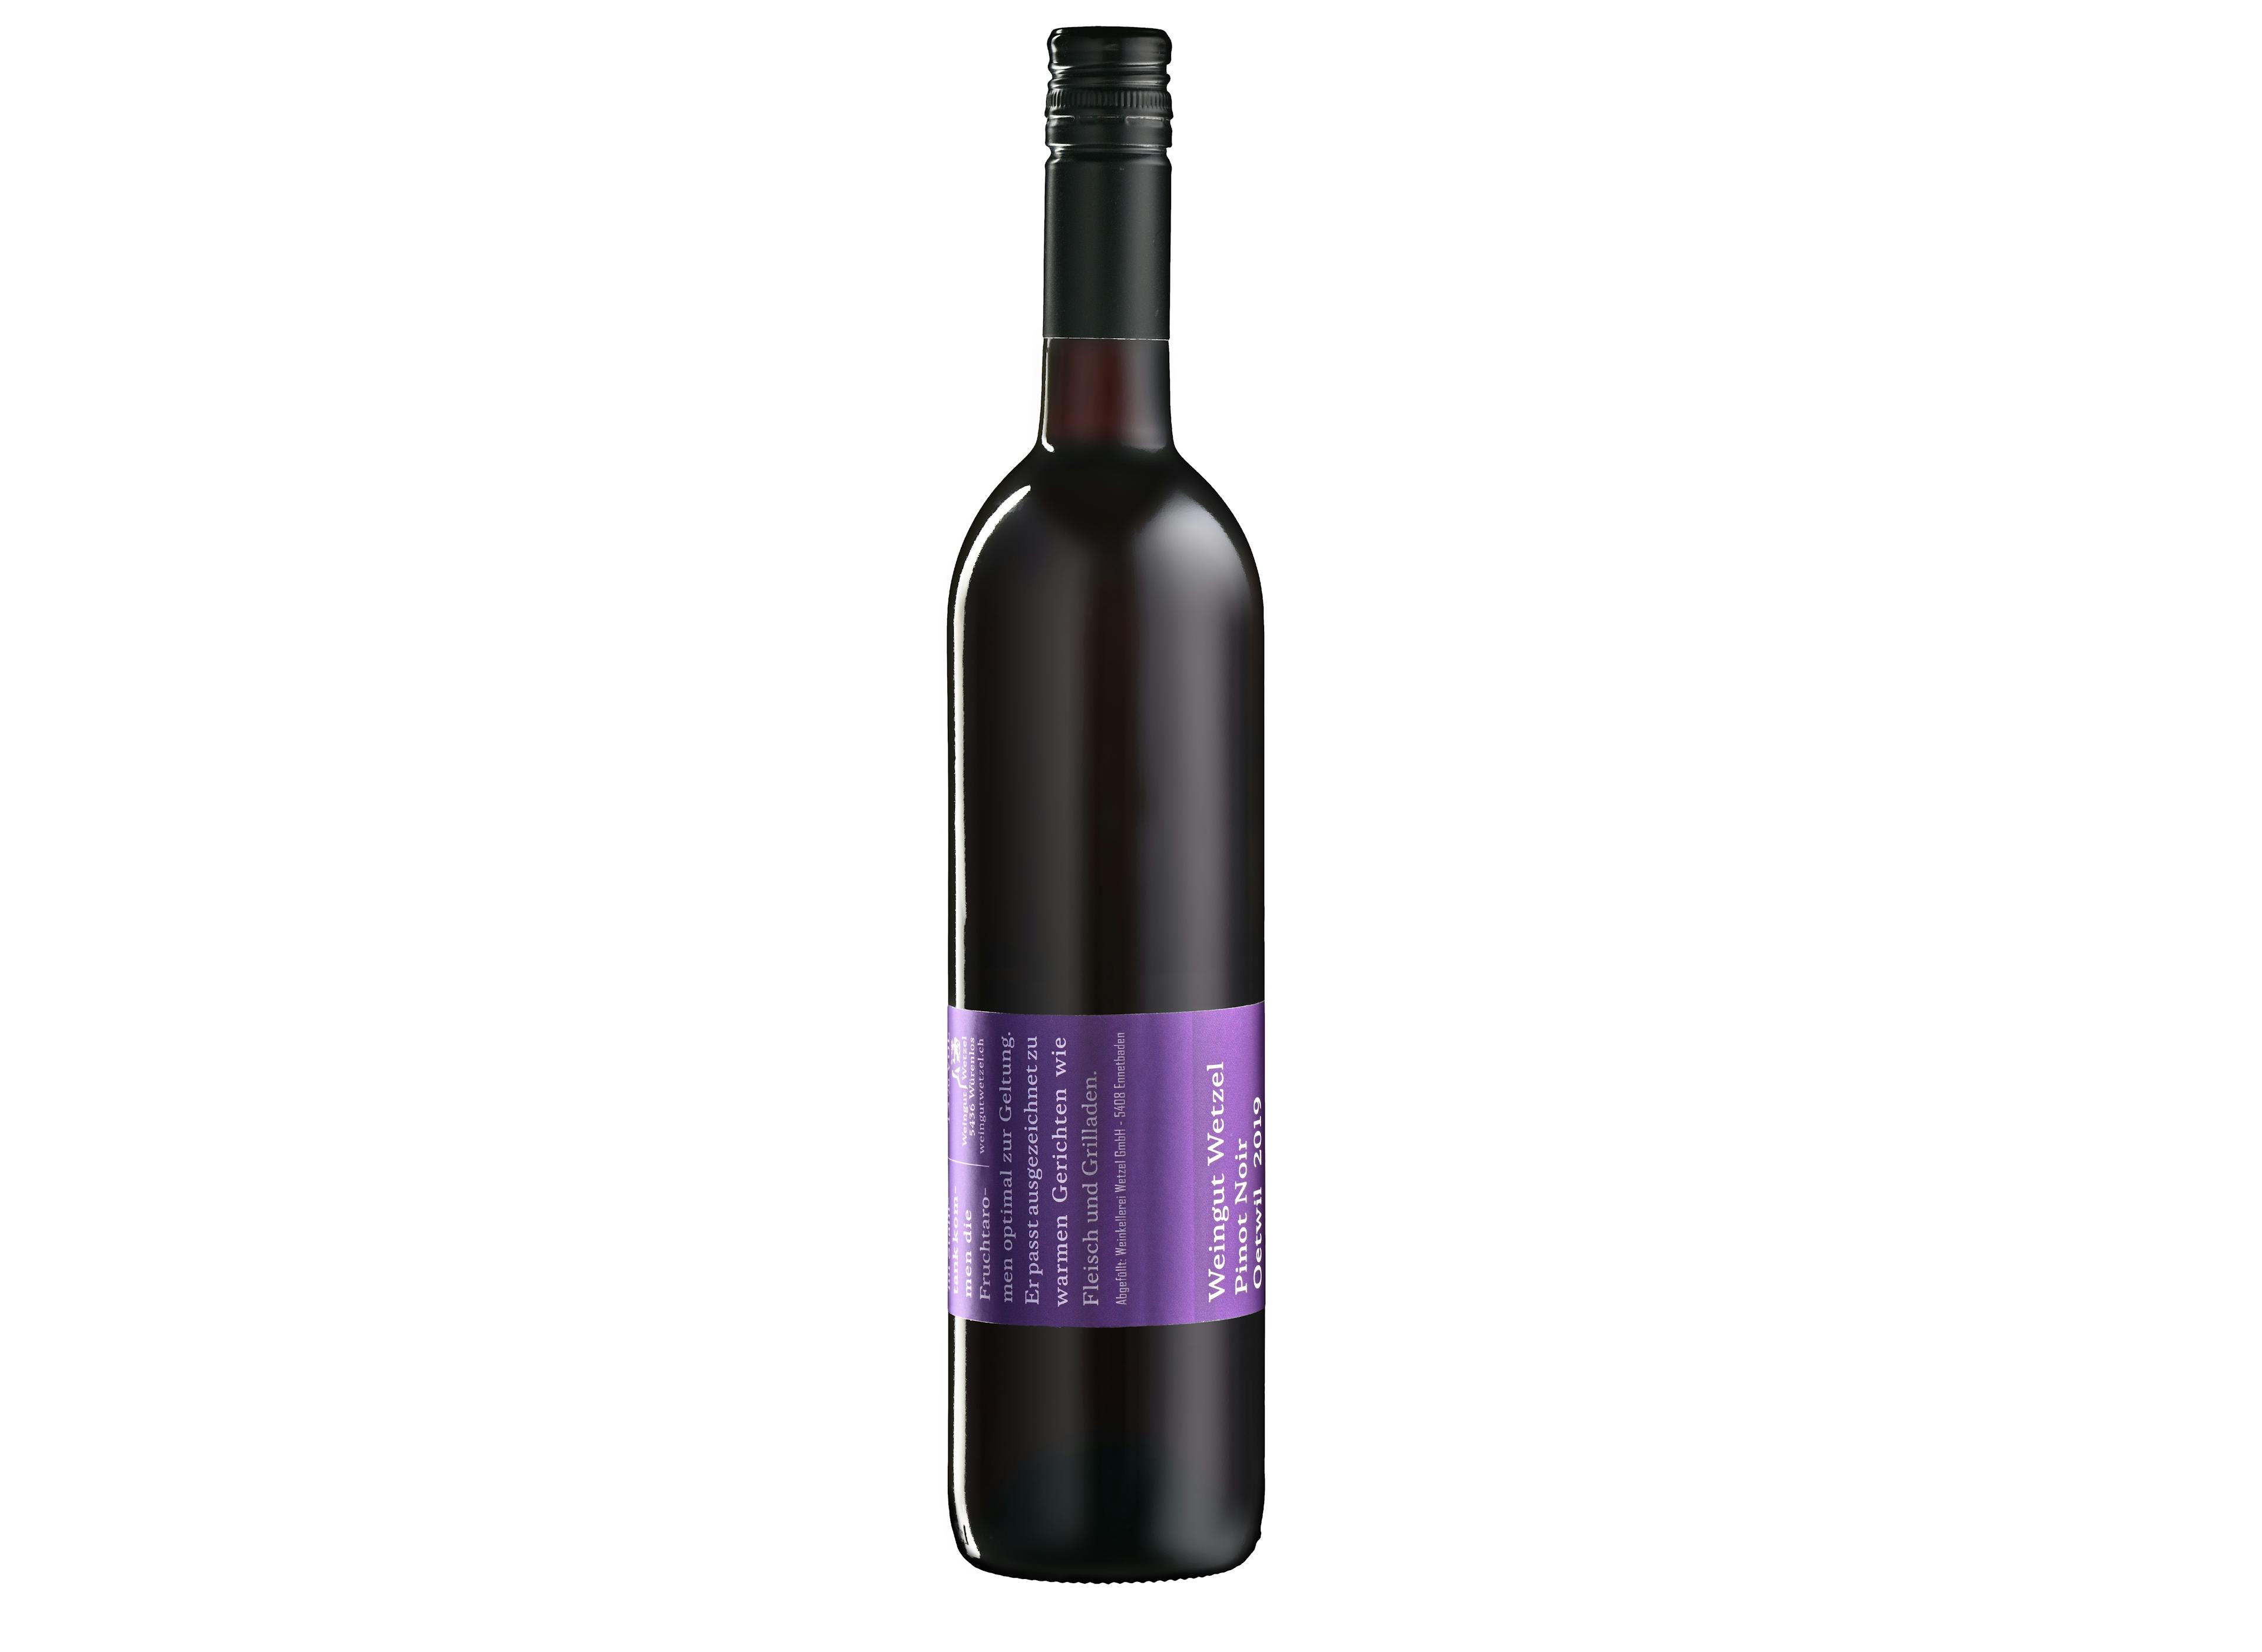 Domaine Wetzel Pinot Noir Oetwil, produit artisanal en vente directe en Suisse